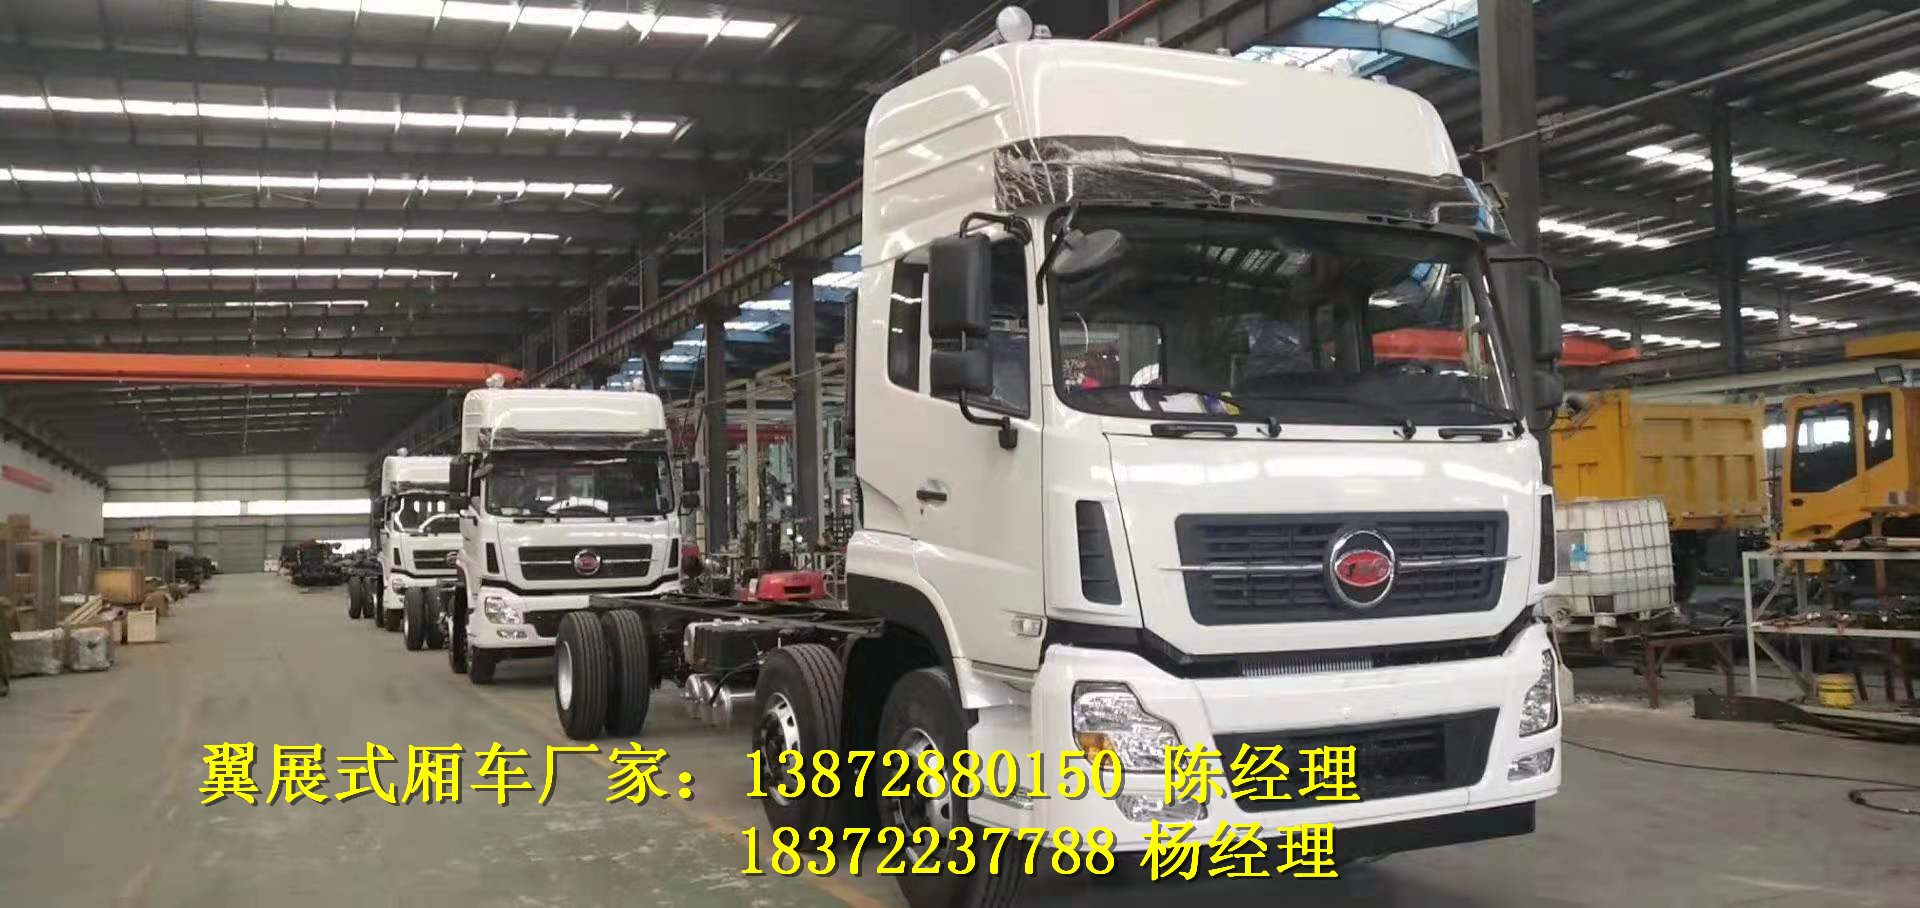 阳江2020年新规9.6米废旧电池运输车详细配置 危险品车厂家